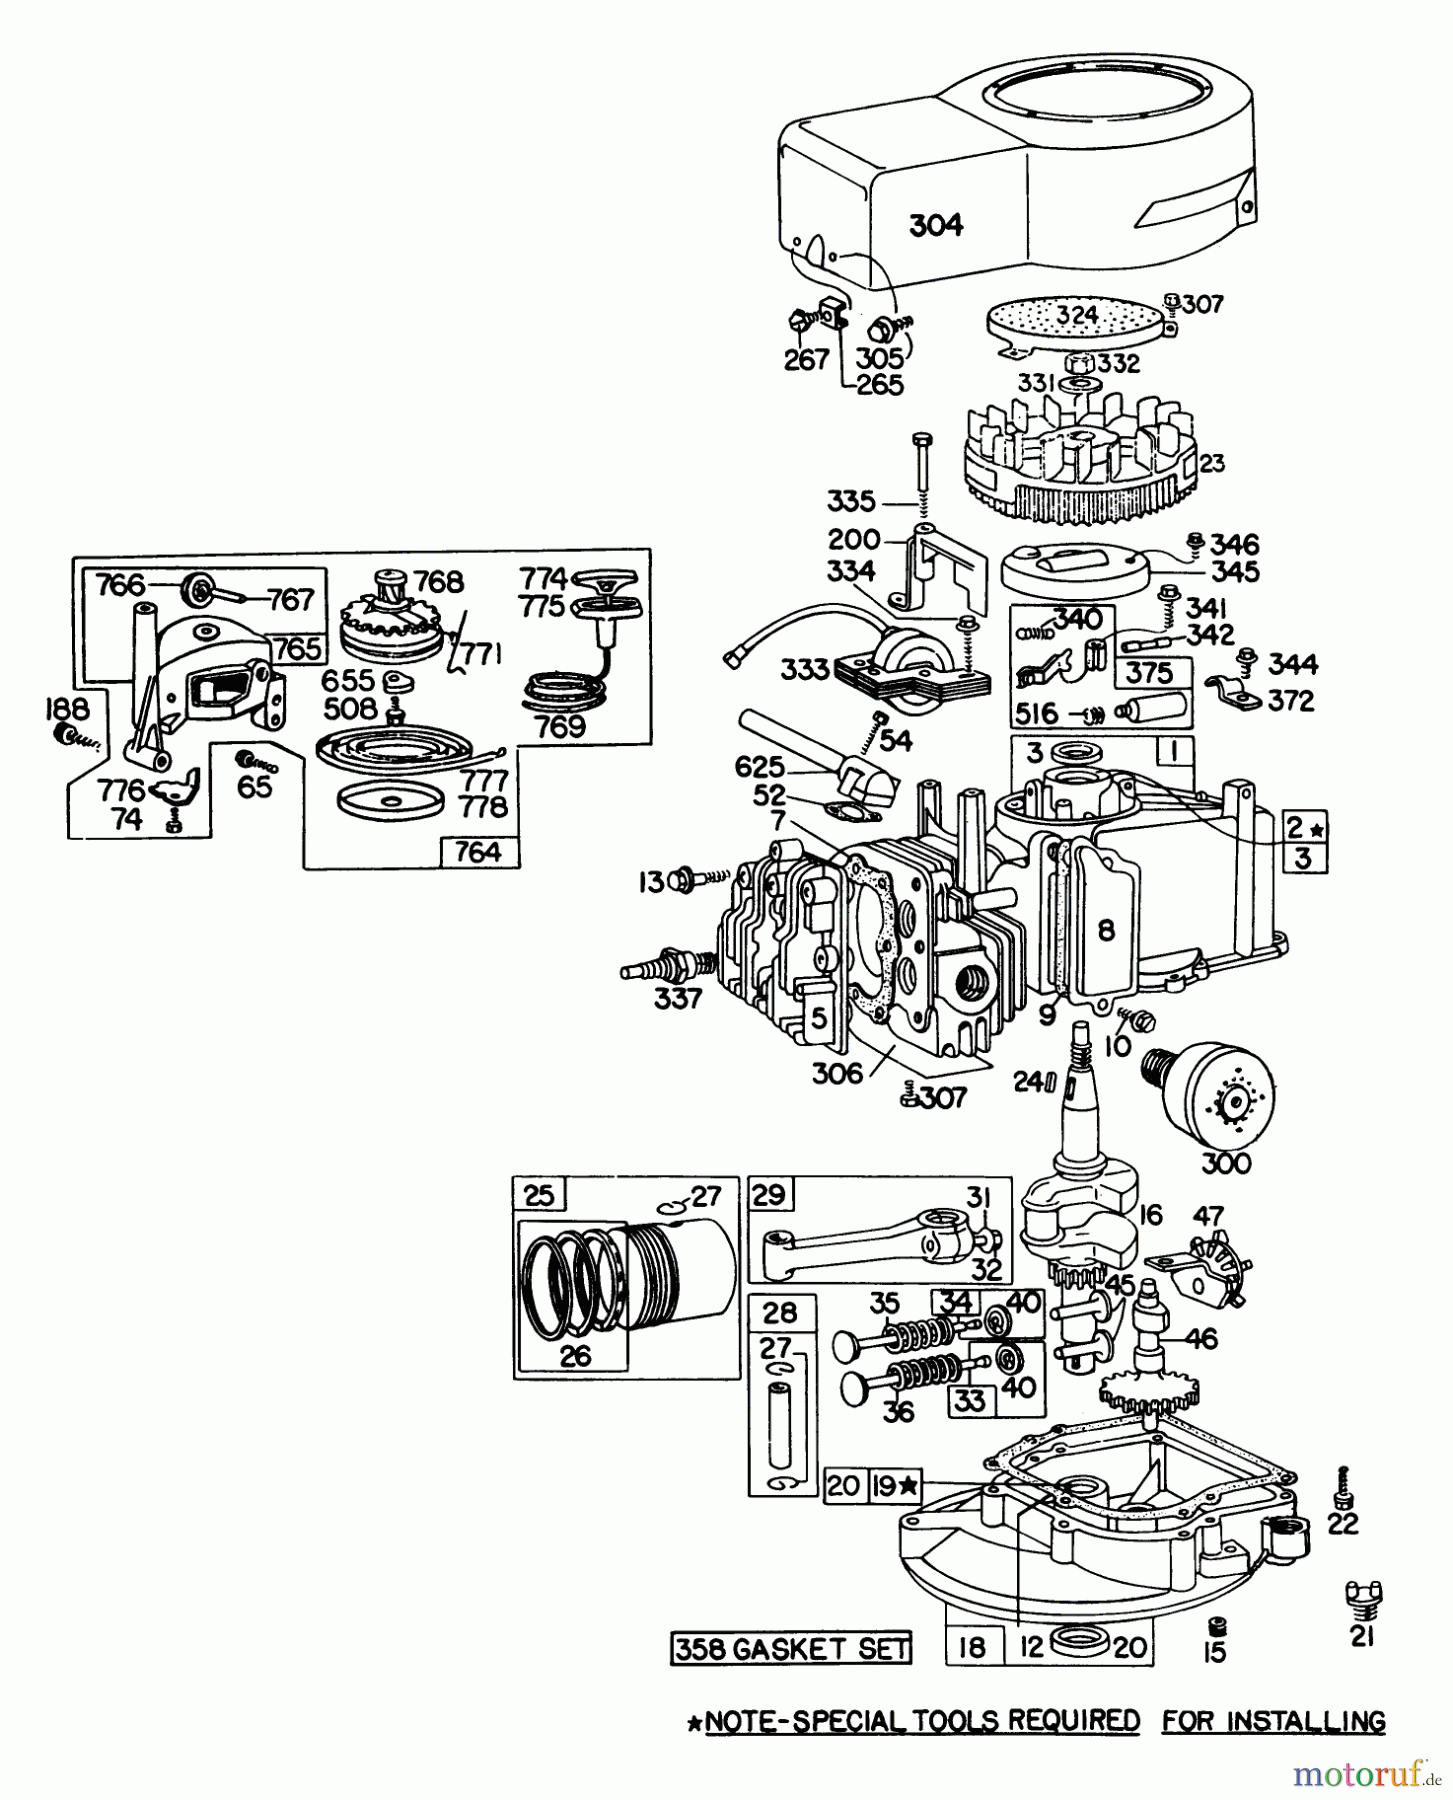  Toro Neu Mowers, Walk-Behind Seite 1 16113 - Toro Whirlwind II Lawnmower, 1977 (7000001-7999999) ENGINE BRIGGS & STRATTON MODEL 92908-1744-01 FOR 21